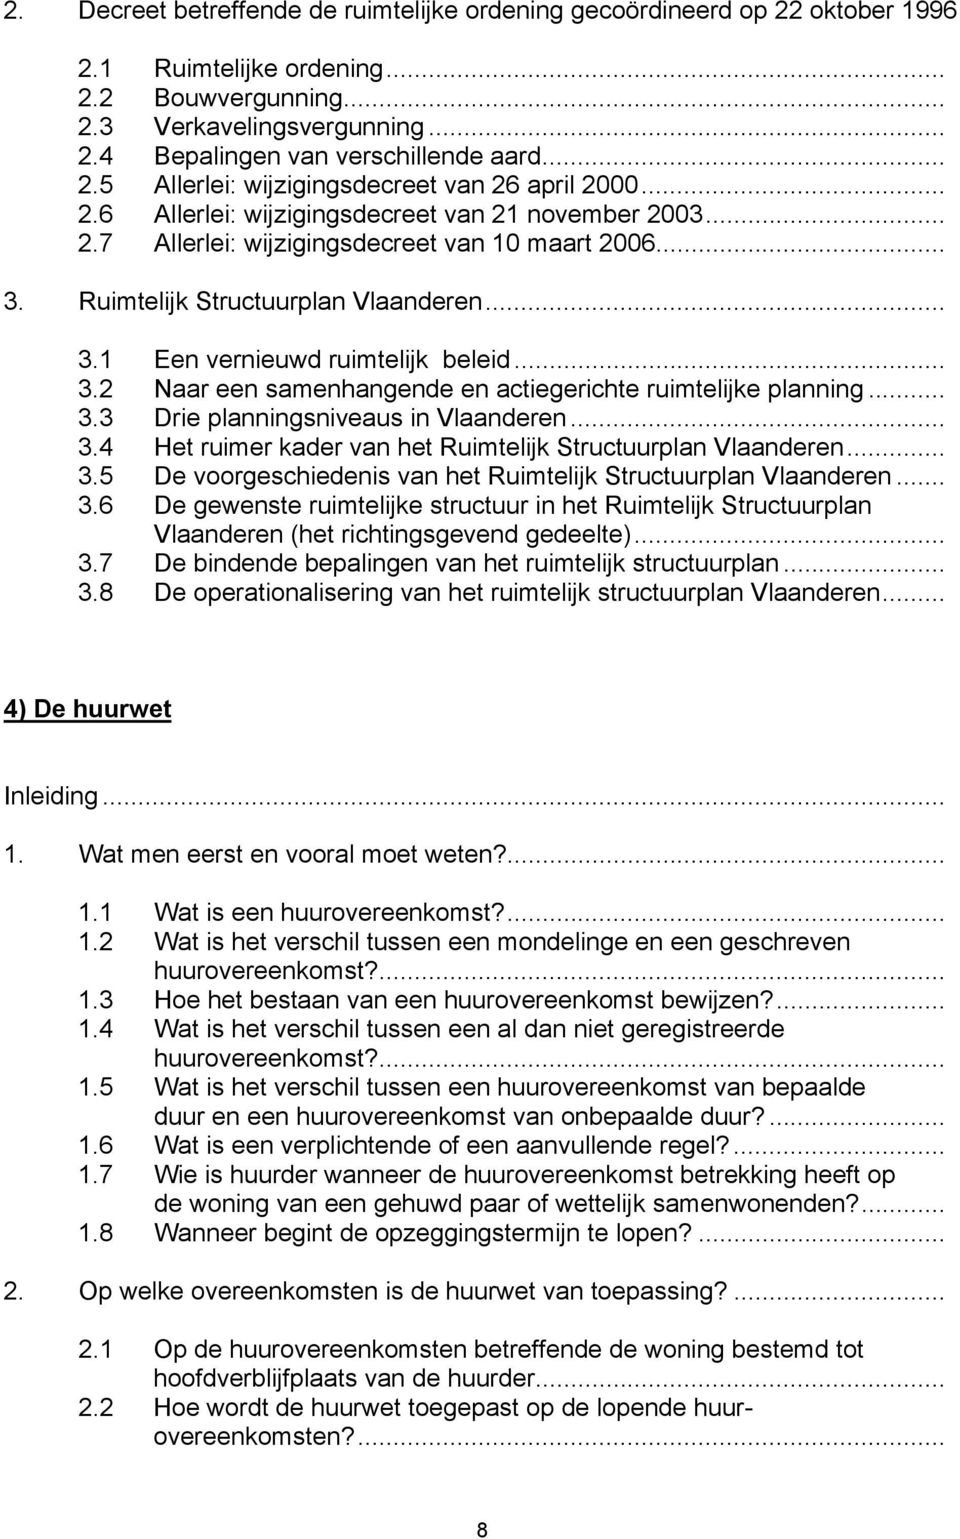 Ruimtelijk Structuurplan Vlaanderen... 3.1 Een vernieuwd ruimtelijk beleid... 3.2 Naar een samenhangende en actiegerichte ruimtelijke planning... 3.3 Drie planningsniveaus in Vlaanderen... 3.4 Het ruimer kader van het Ruimtelijk Structuurplan Vlaanderen.